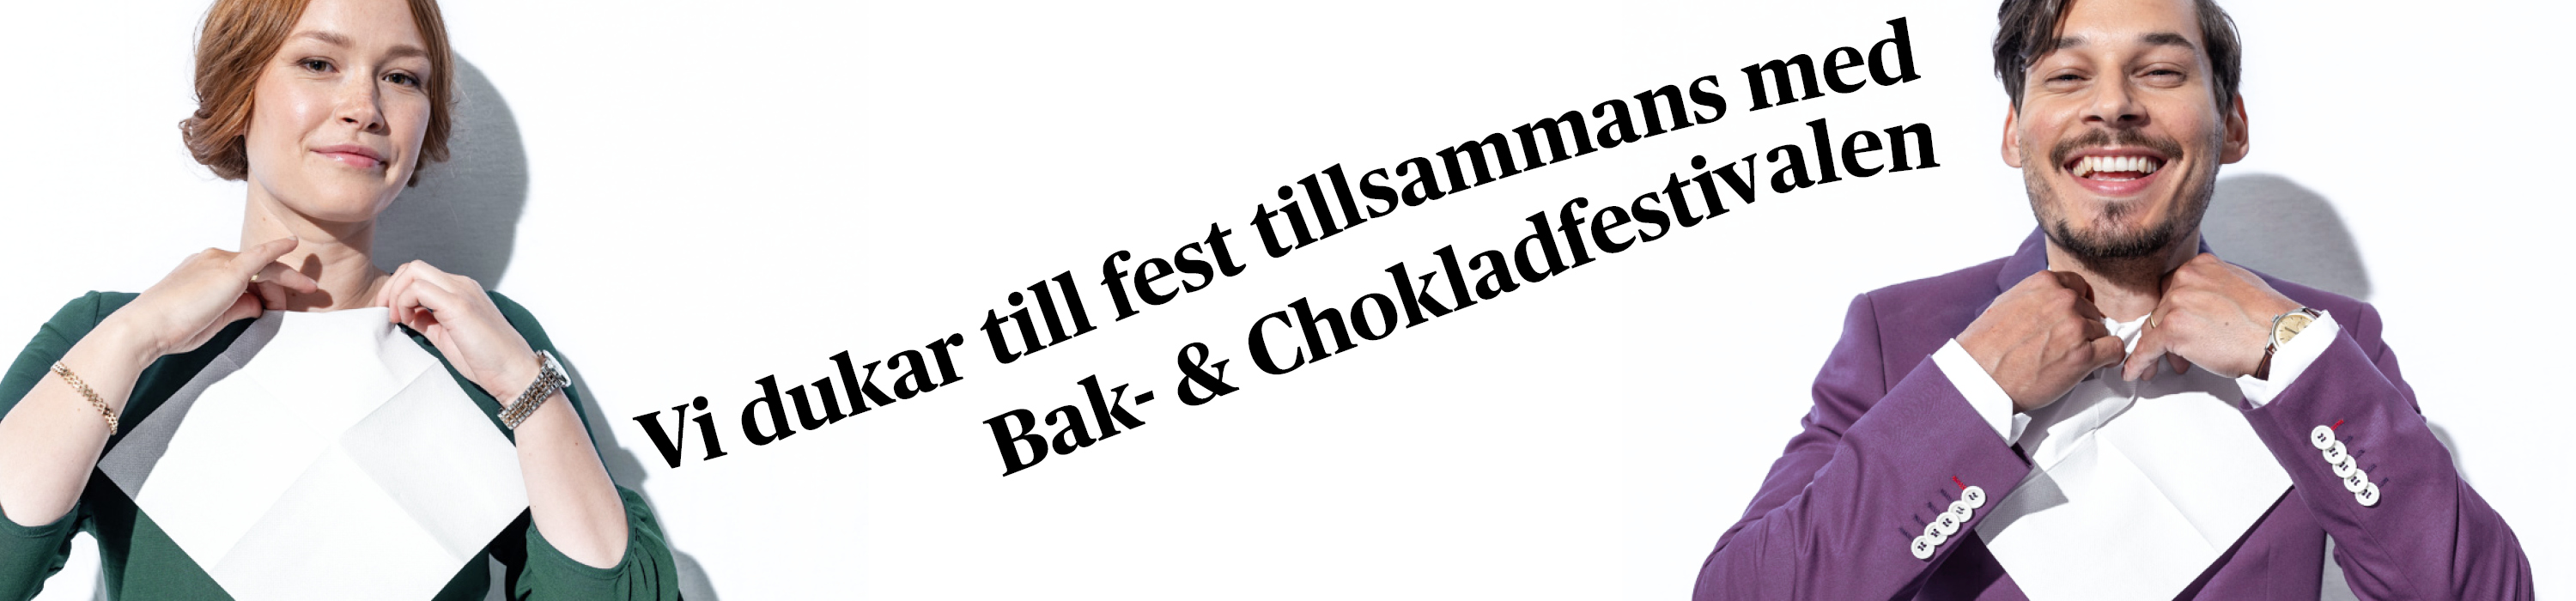 Sthlm Food & Wine - En bild med två personer med servetter i kragen plus texten: Vi dukar till fest tillsammans med Bak- & Chokladfestivalen. 